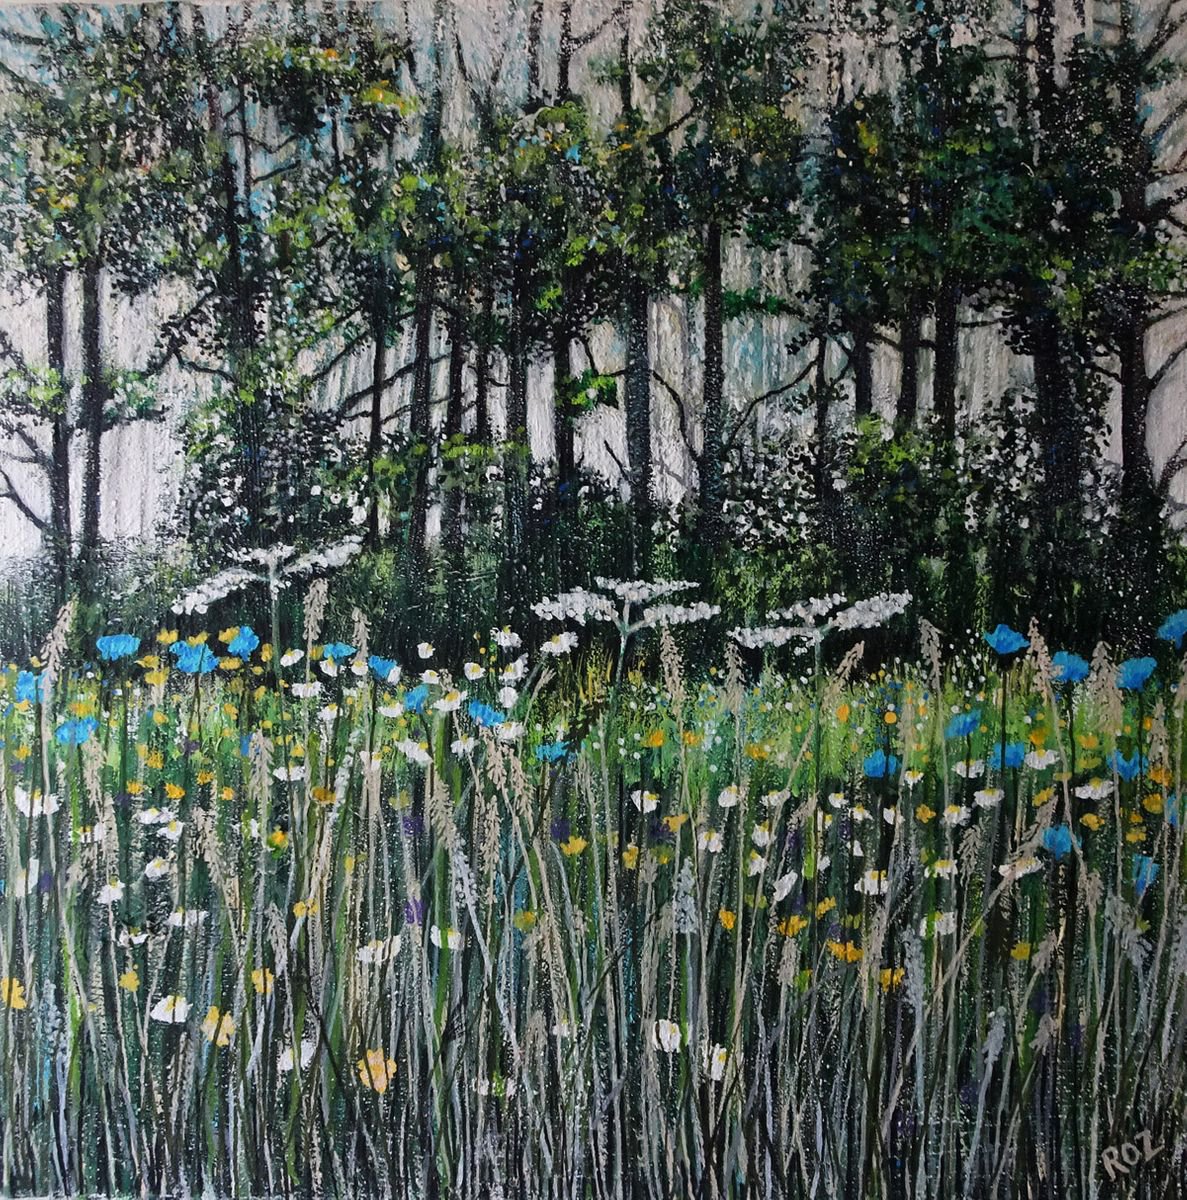 Wildflower Meadow by Roz Edwards